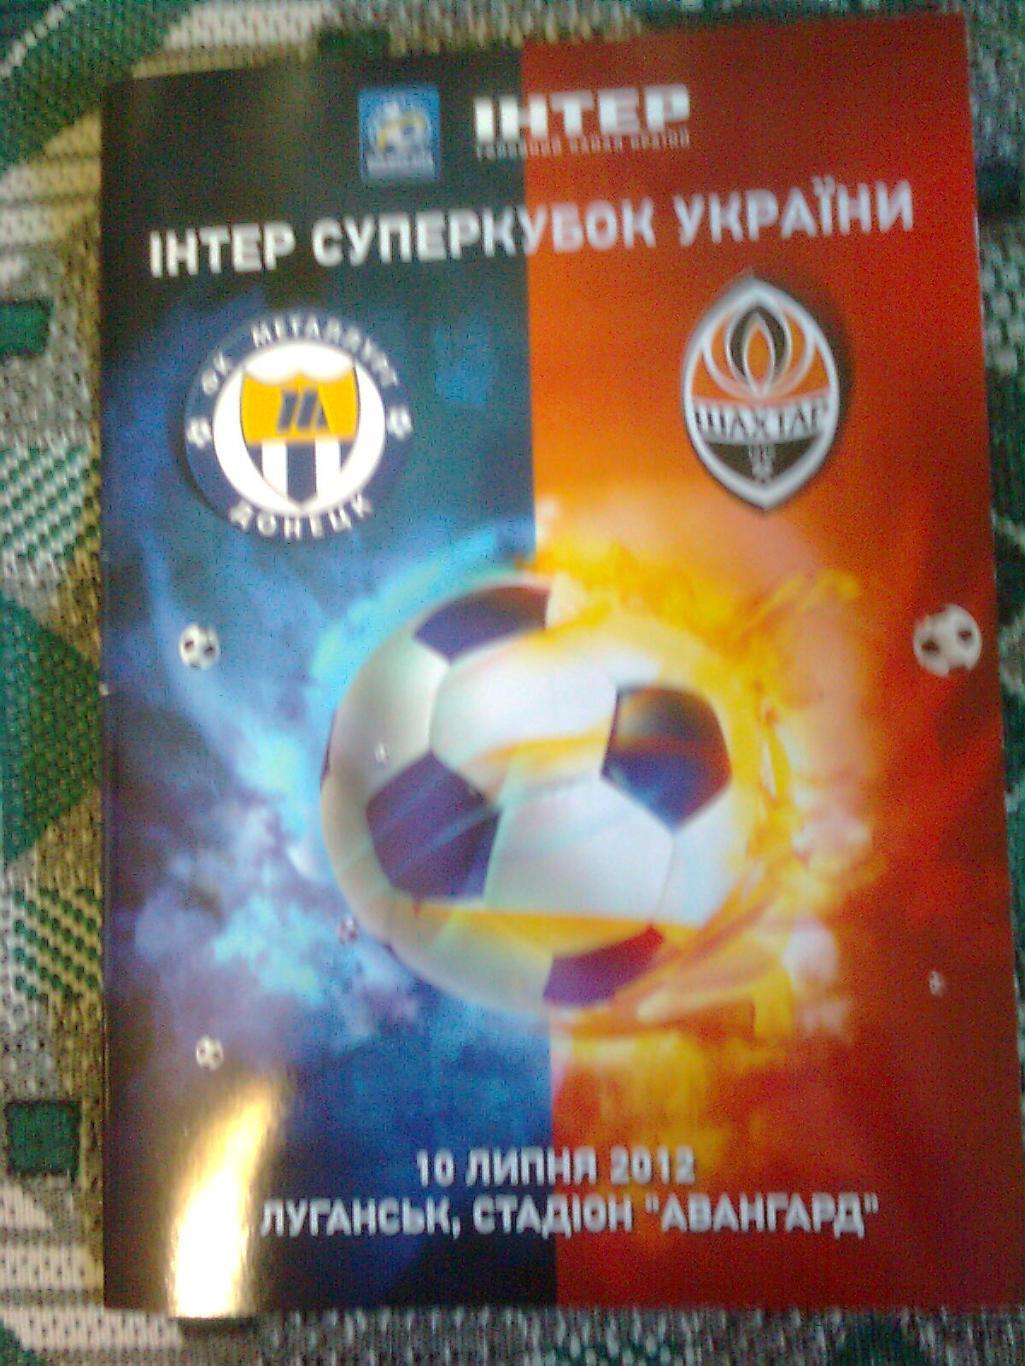 Суперкубок Украины Металлург(Донецк)-Шахтёр(Донецк)2012 г.